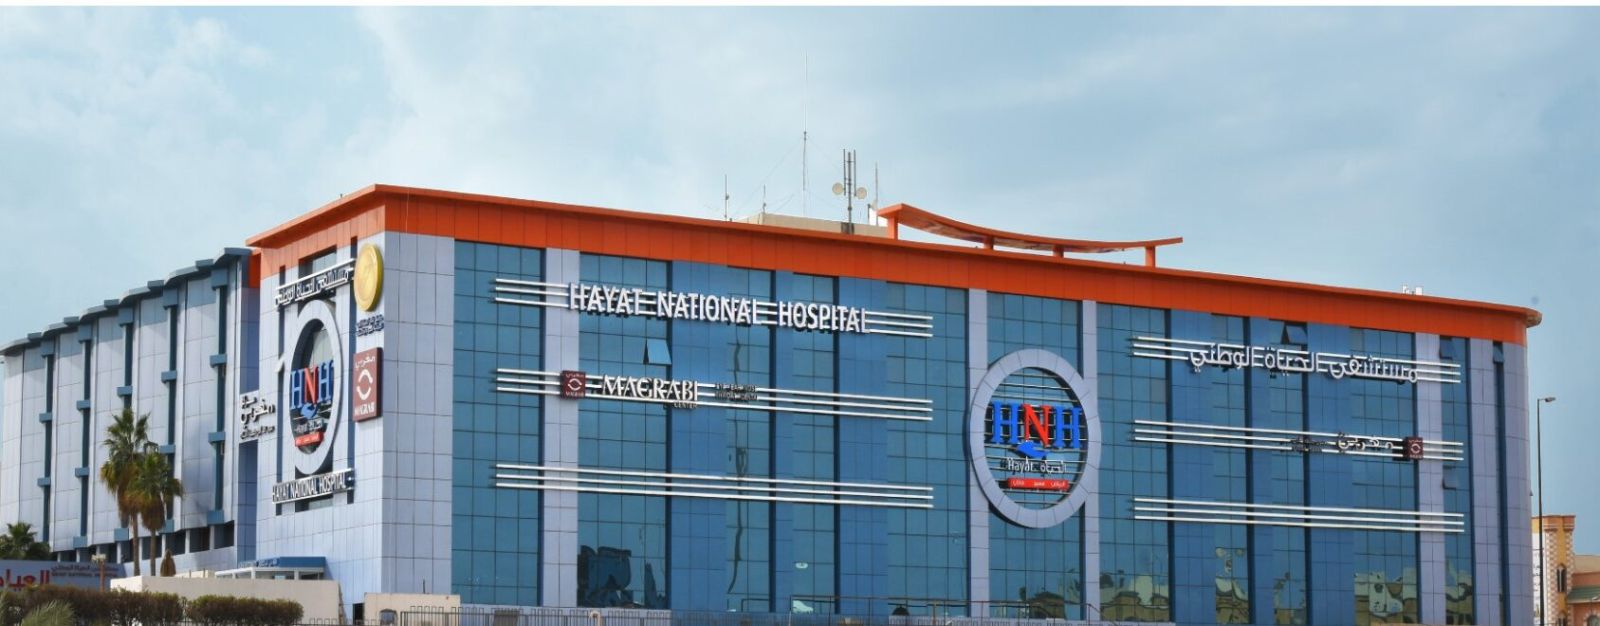 معلومات حول مستشفى الحياة الوطني الرياض والخدمات التي تقدمها